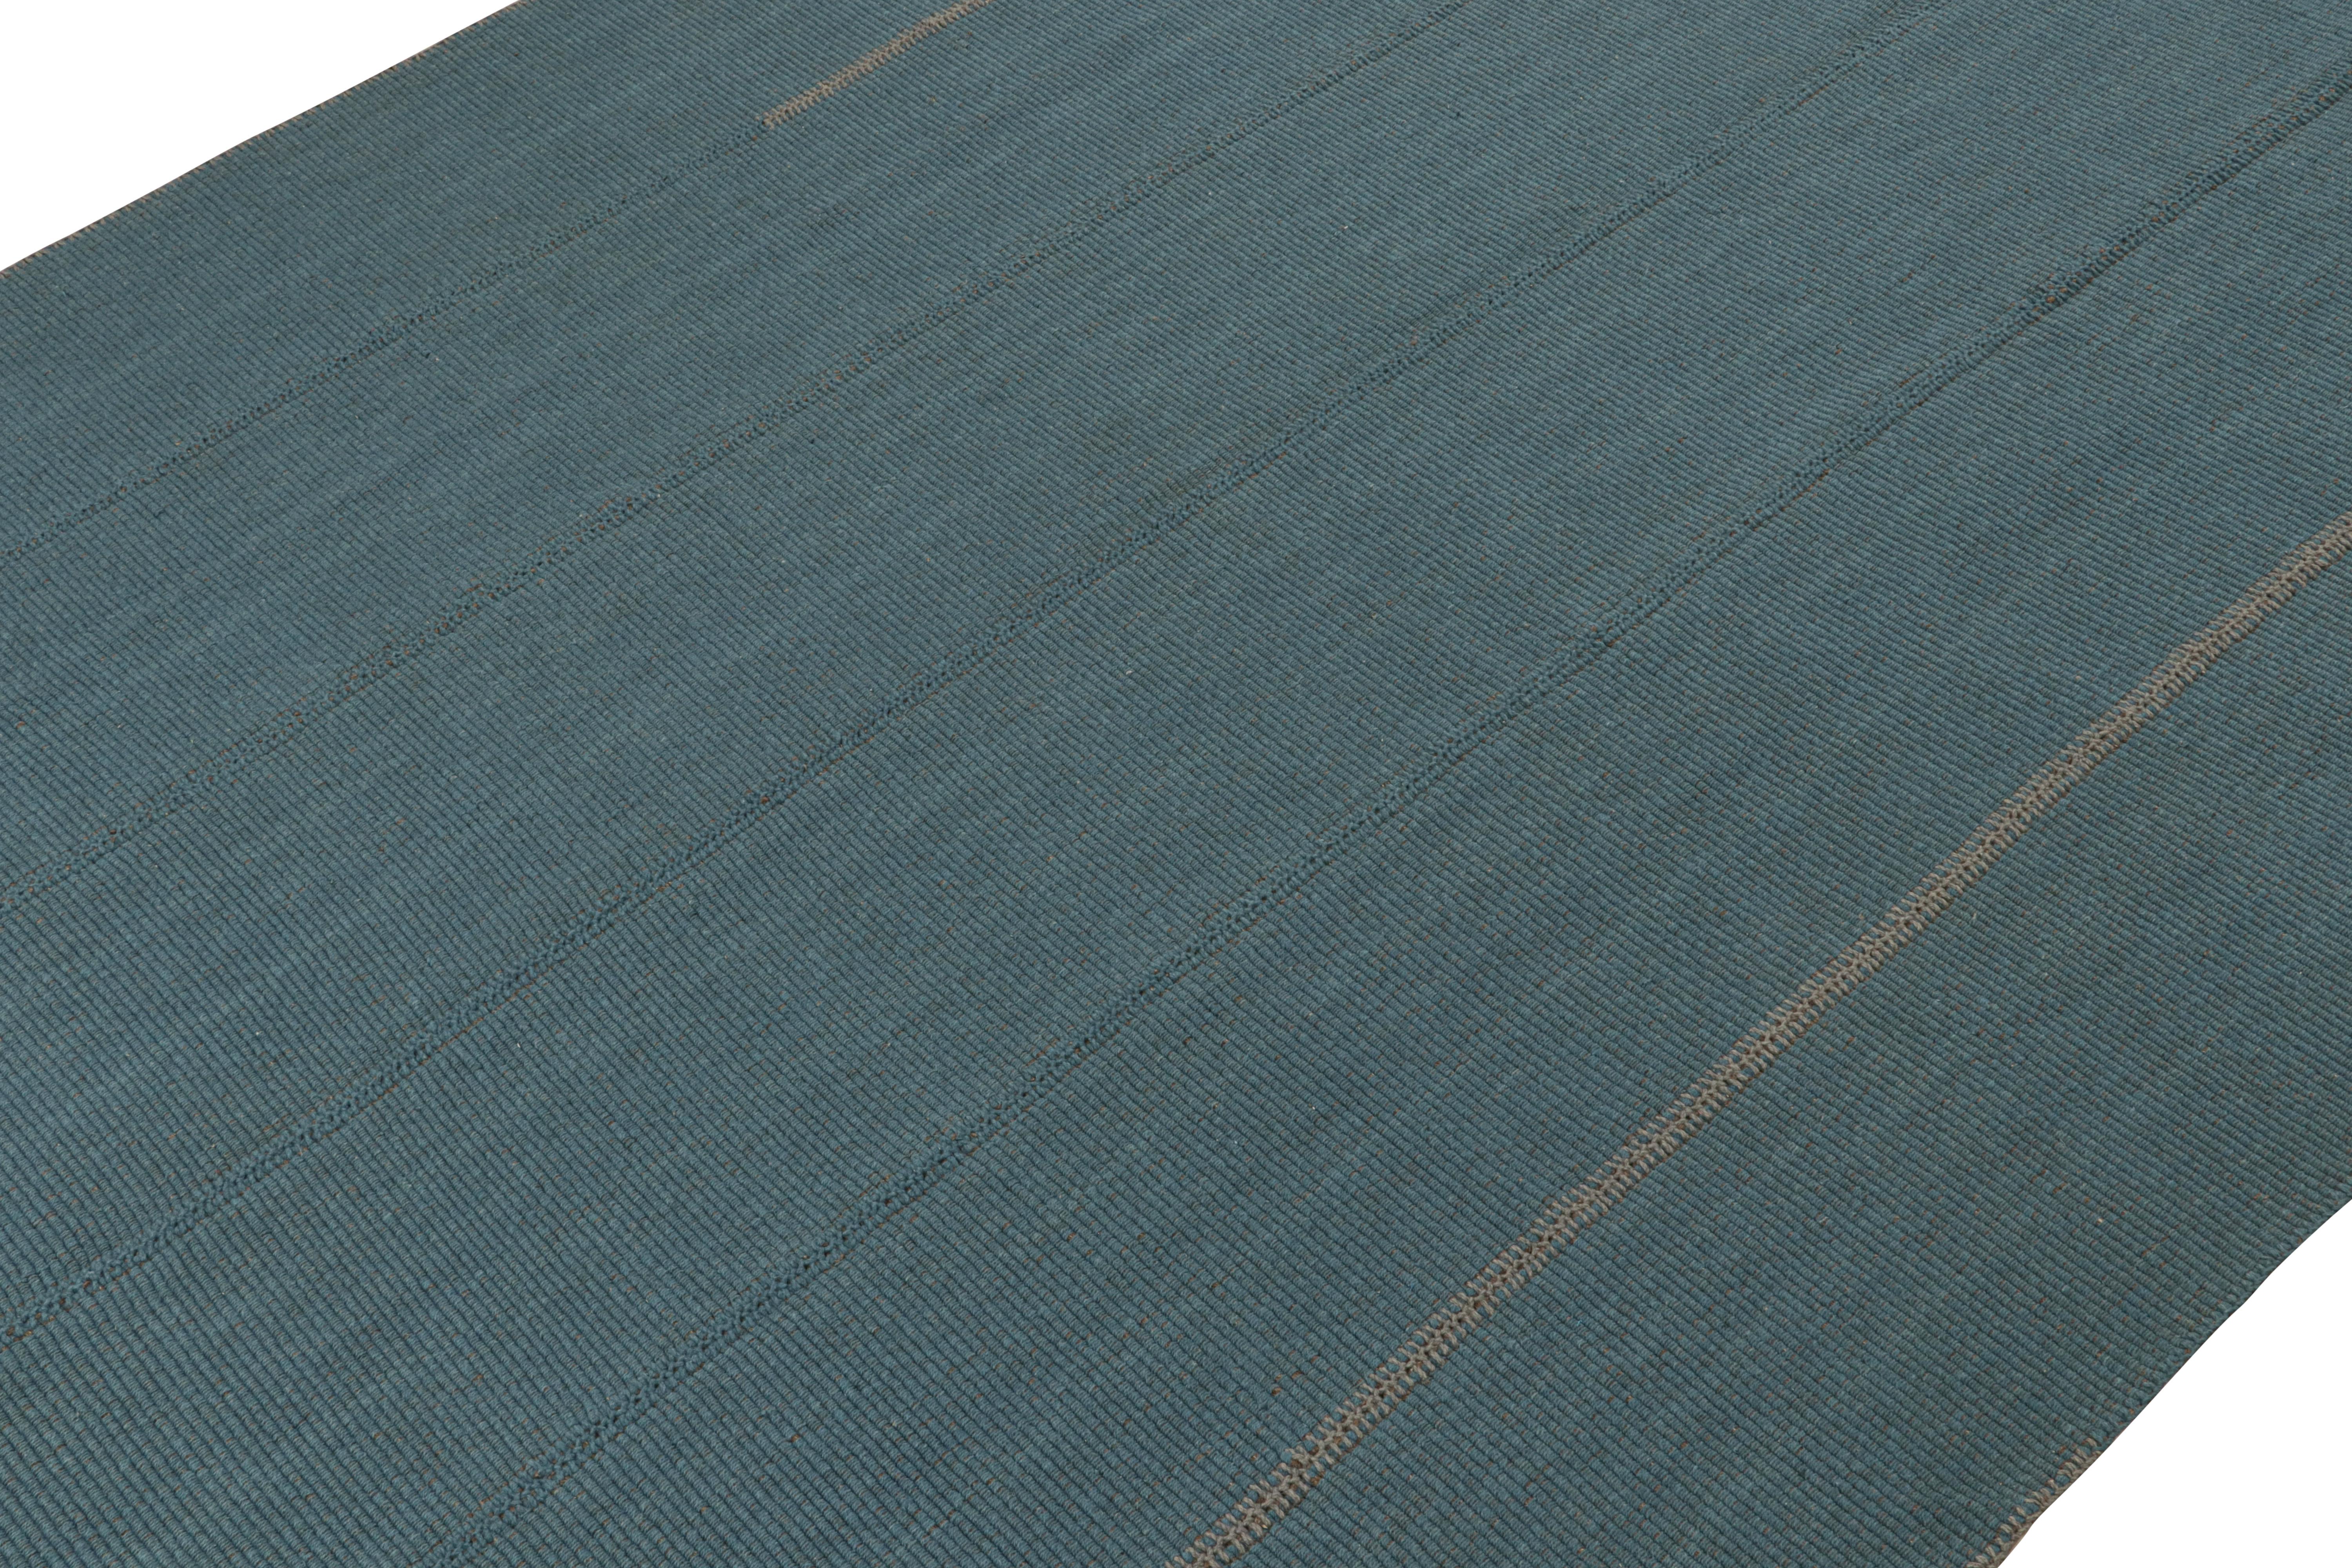 Handgewebter 10x14-Kilim aus Wolle aus einer kühnen neuen Linie zeitgenössischer Flachgewebe von Rug & Kilim.

Über das Design: 

Unser neuester 